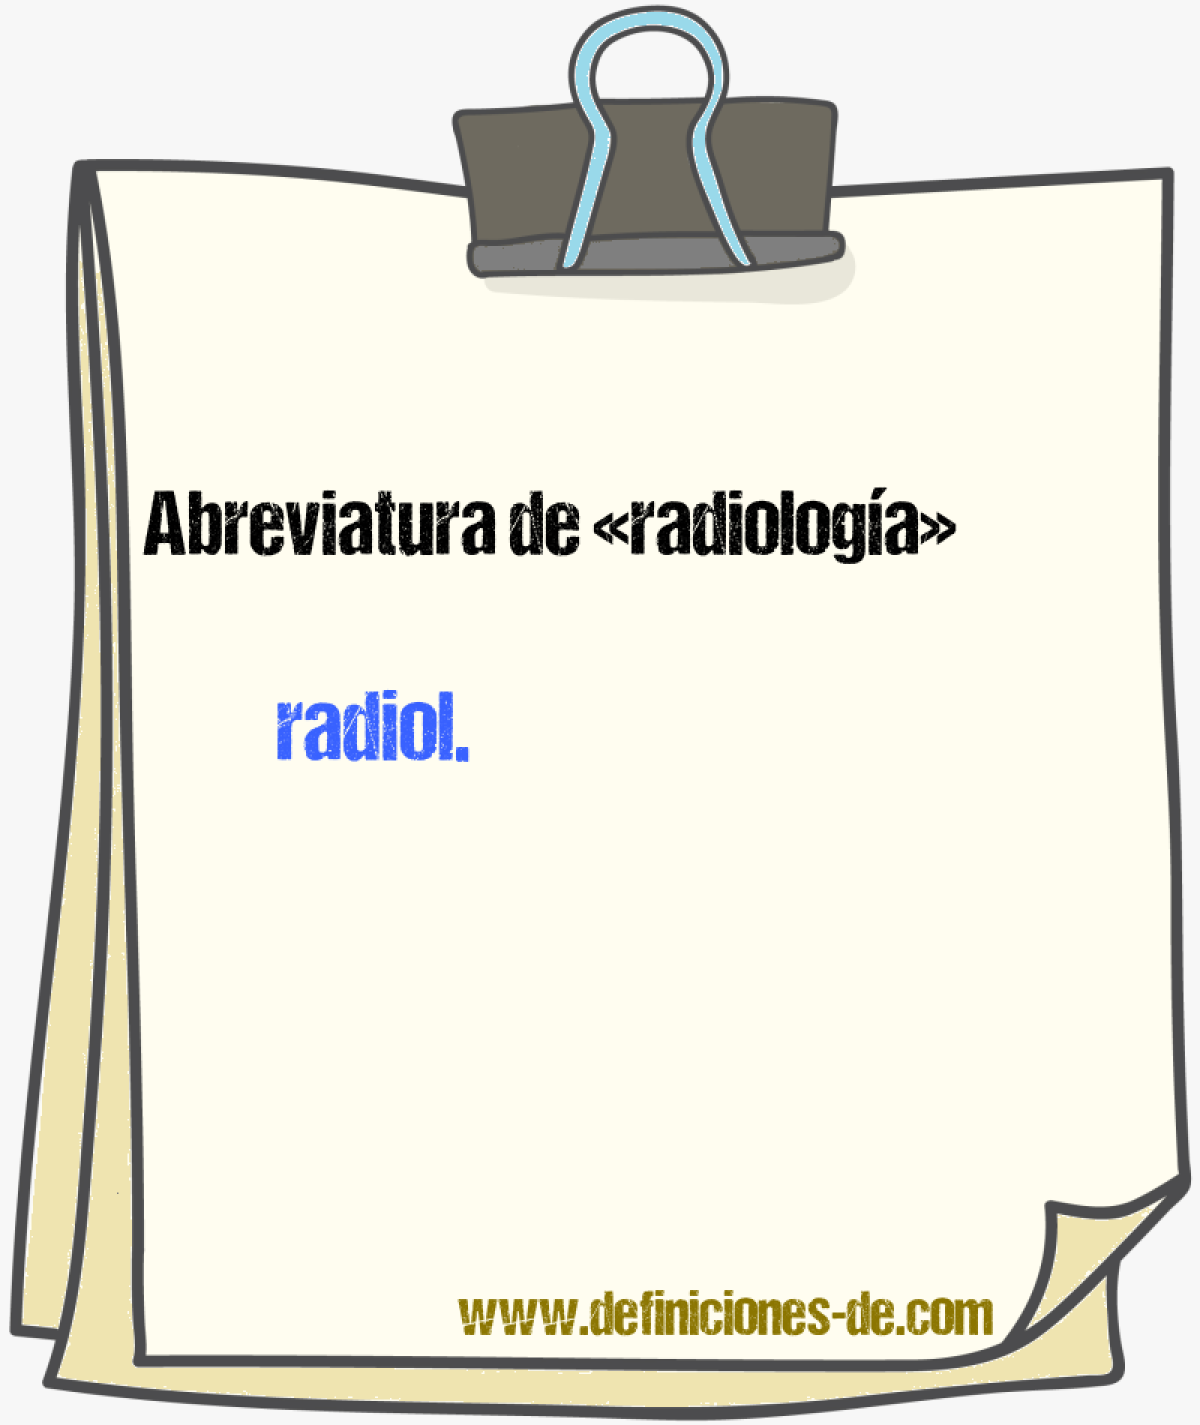 Abreviaturas de radiologa